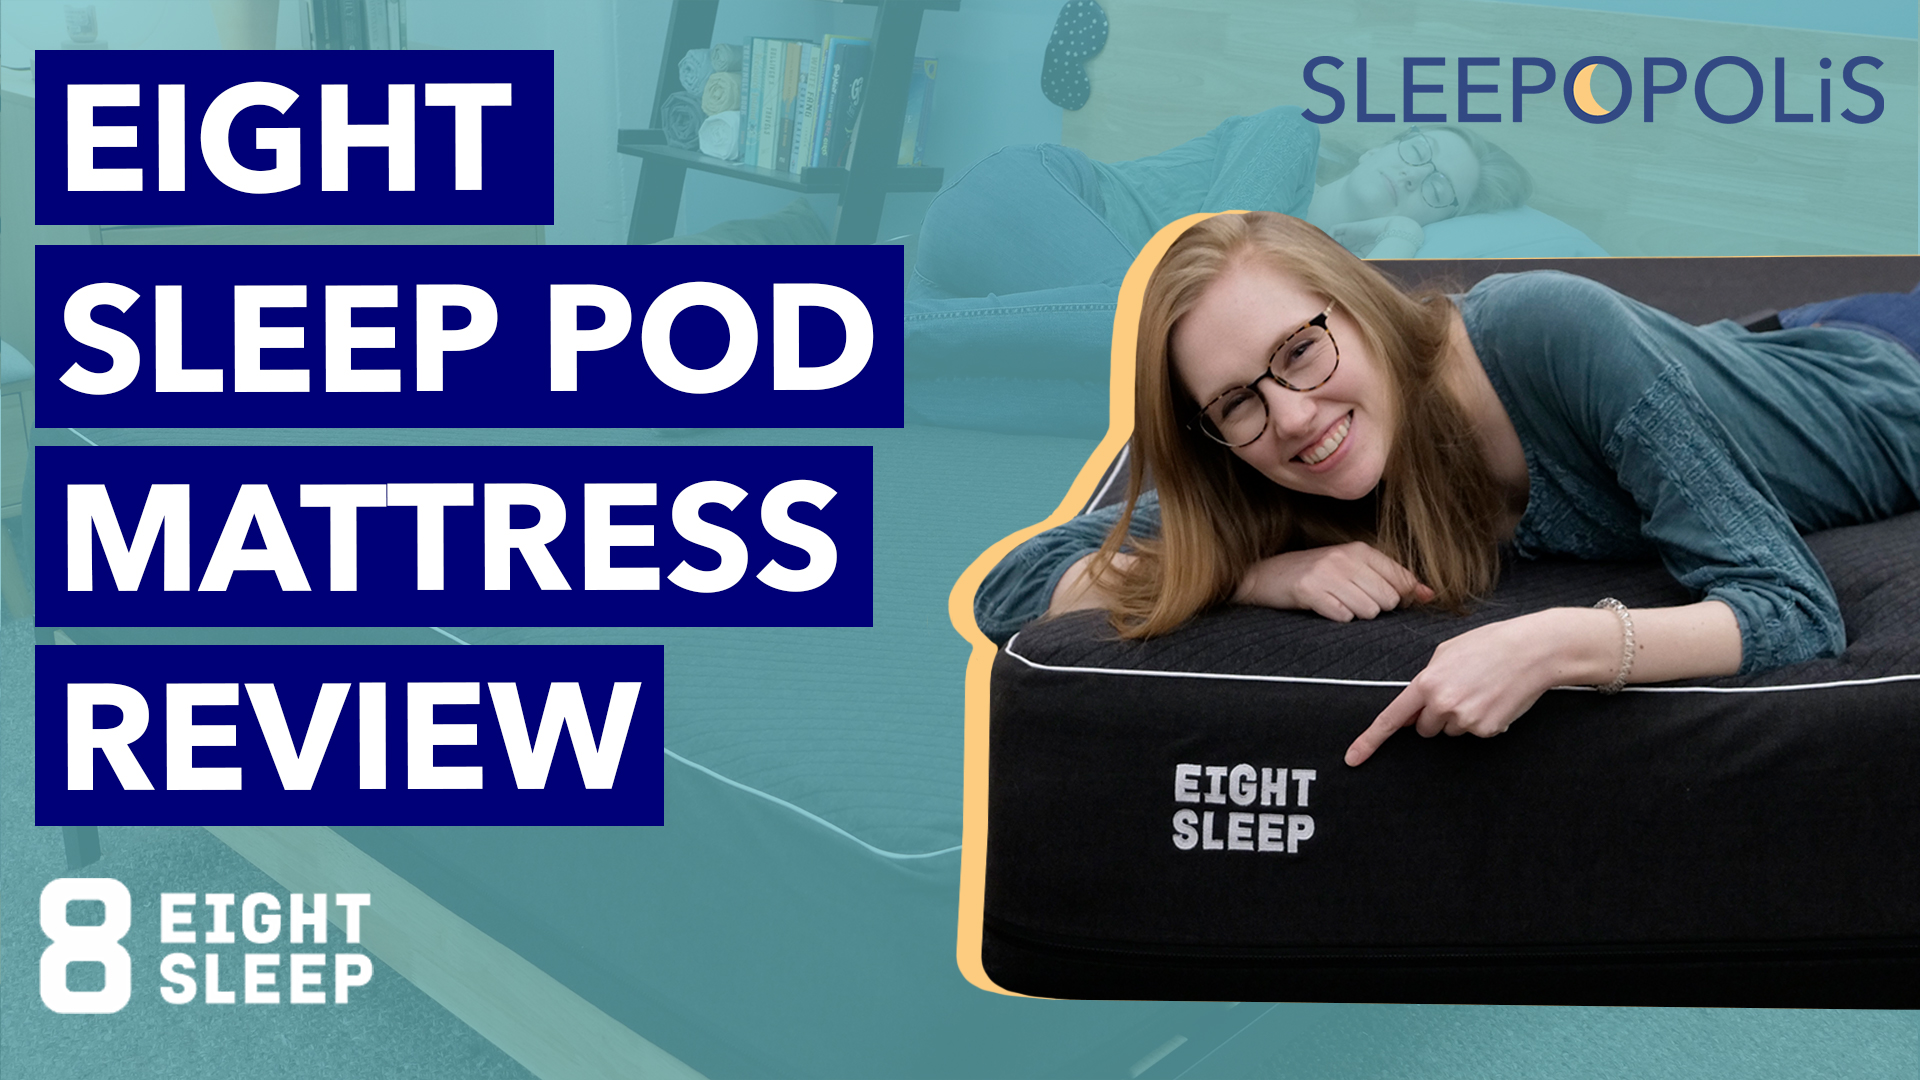 8 sleep pod mattress review